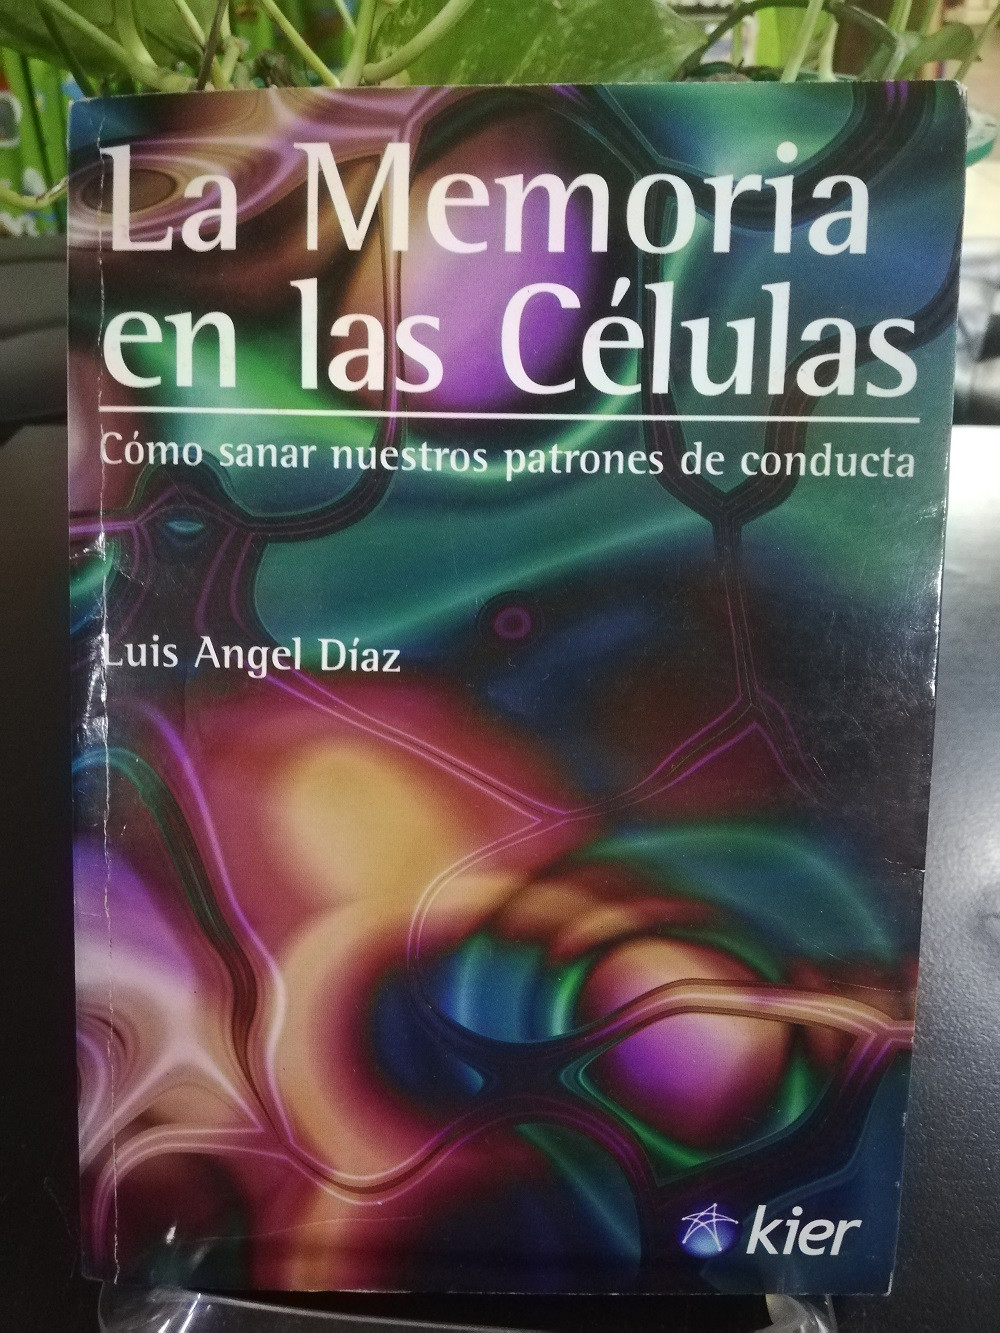 Imagen LA MEMORIA EN LAS CÉLULAS - LUIS ANGEL DIAZ 1